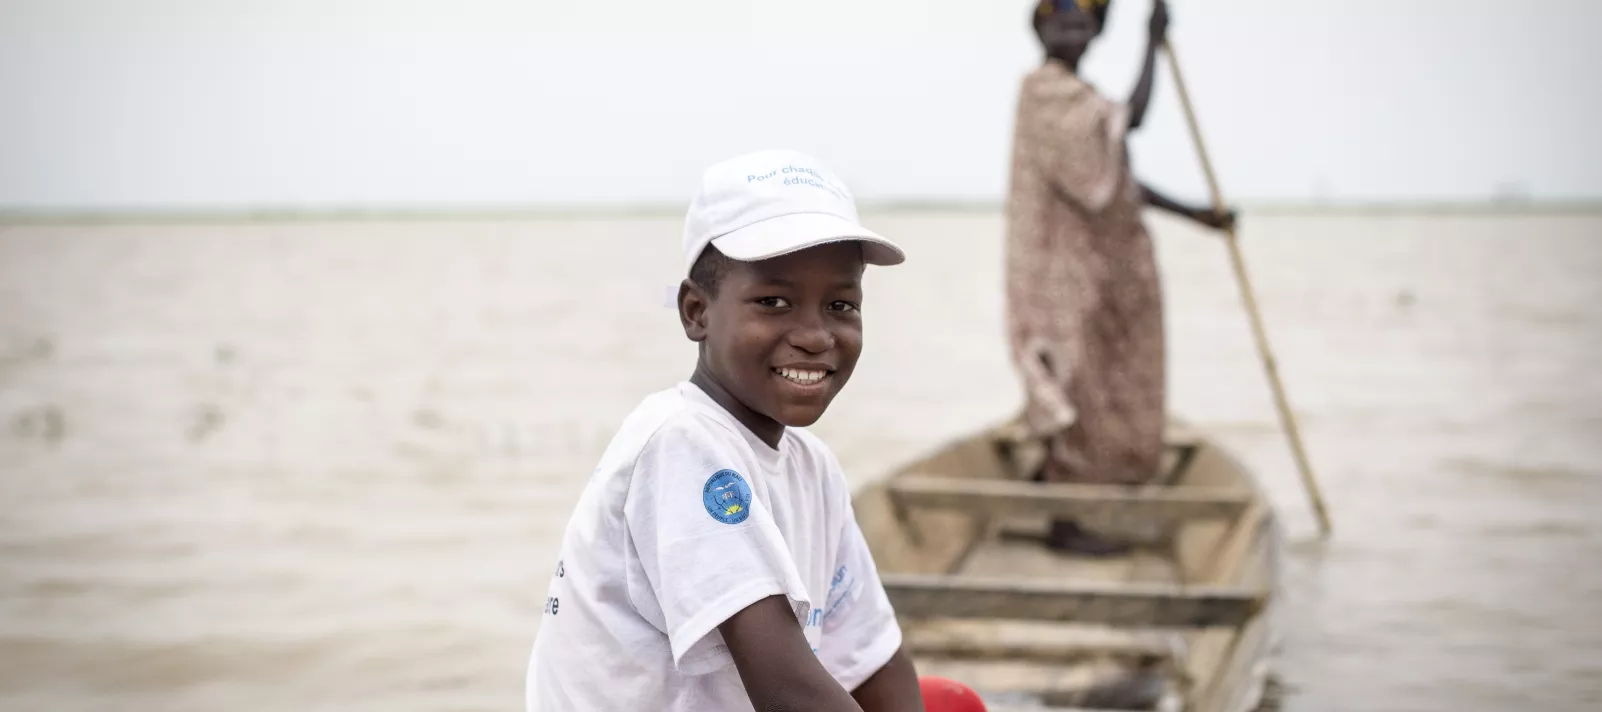 Alou Keïta, 11 ans, élève en classe de 6ème année, est enfant ambassadeur de la rentrée scolaire. Avec ses camarades, il prend une pirogue pour se rendre de l’autre côté du fleuve Niger pour sensibiliser les parents.